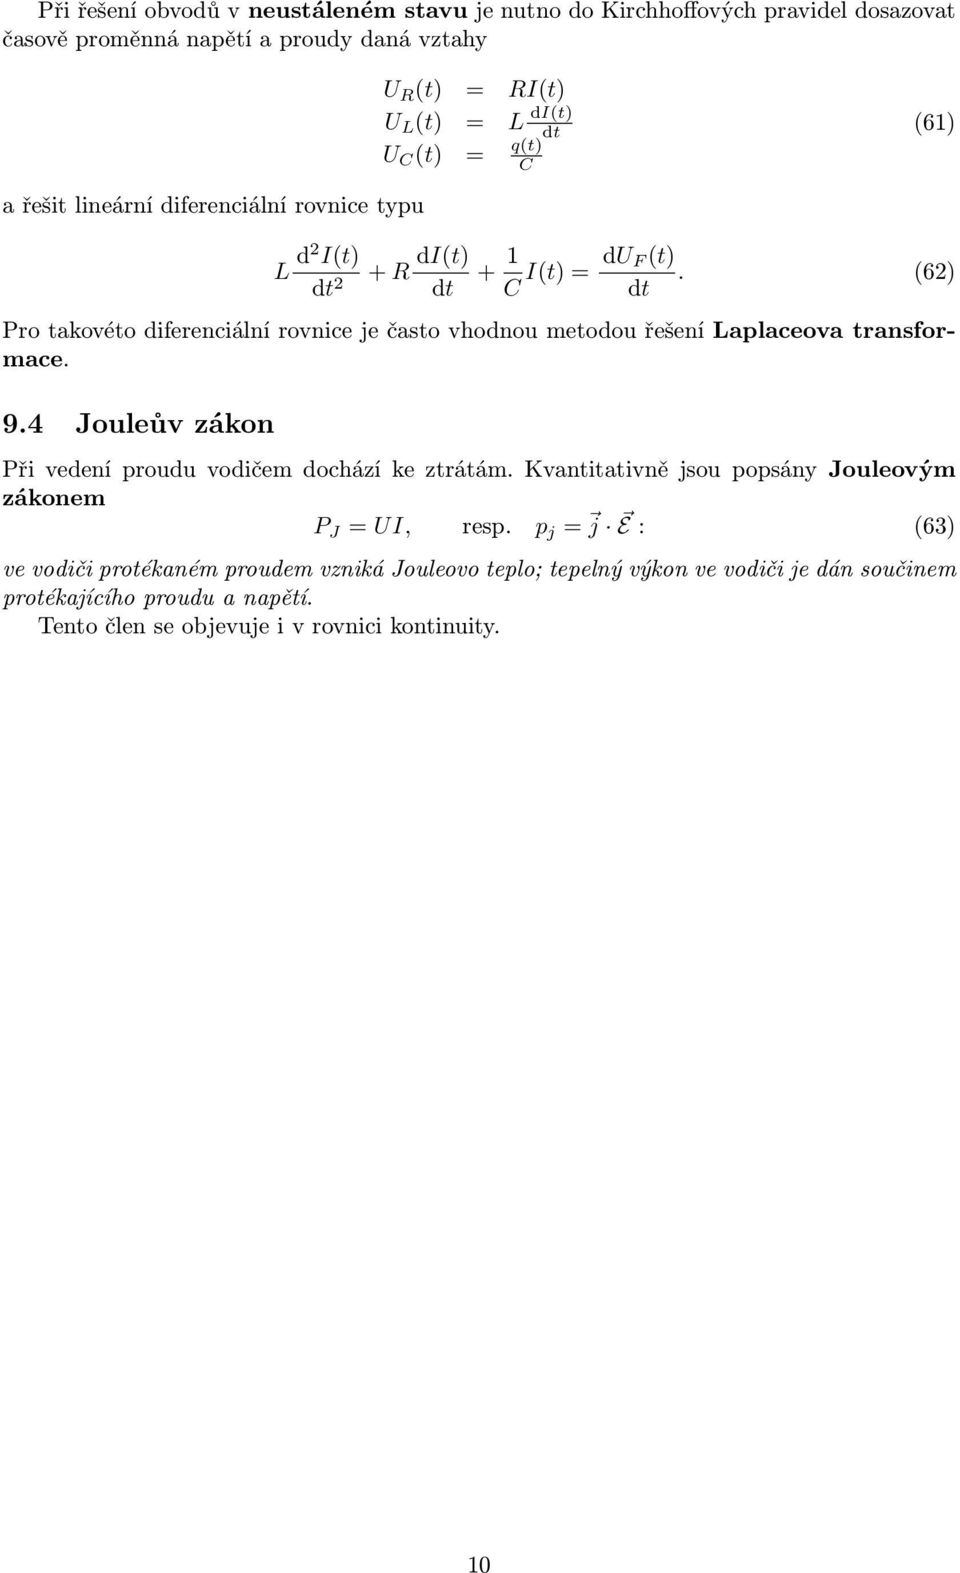 (62) dt Pro takovéto diferenciální rovnice je často vhodnou metodou řešení Laplaceova transformace. 9.4 Jouleův zákon Při vedení proudu vodičem dochází ke ztrátám.